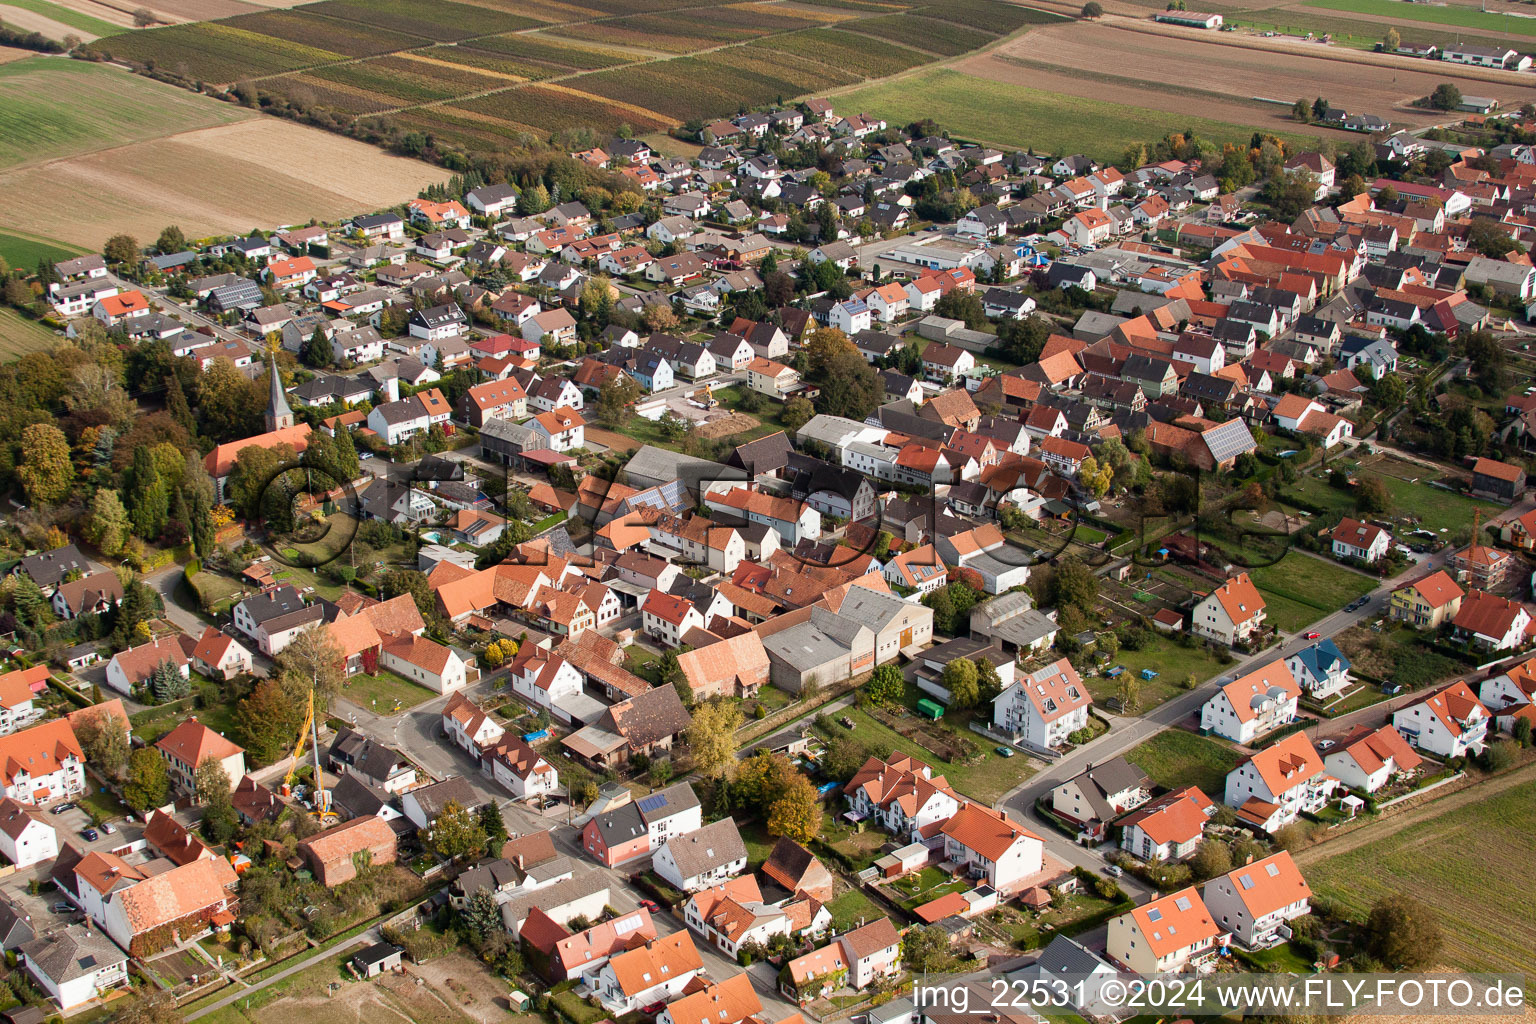 Photographie aérienne de Champs agricoles et surfaces utilisables à Freckenfeld dans le département Rhénanie-Palatinat, Allemagne